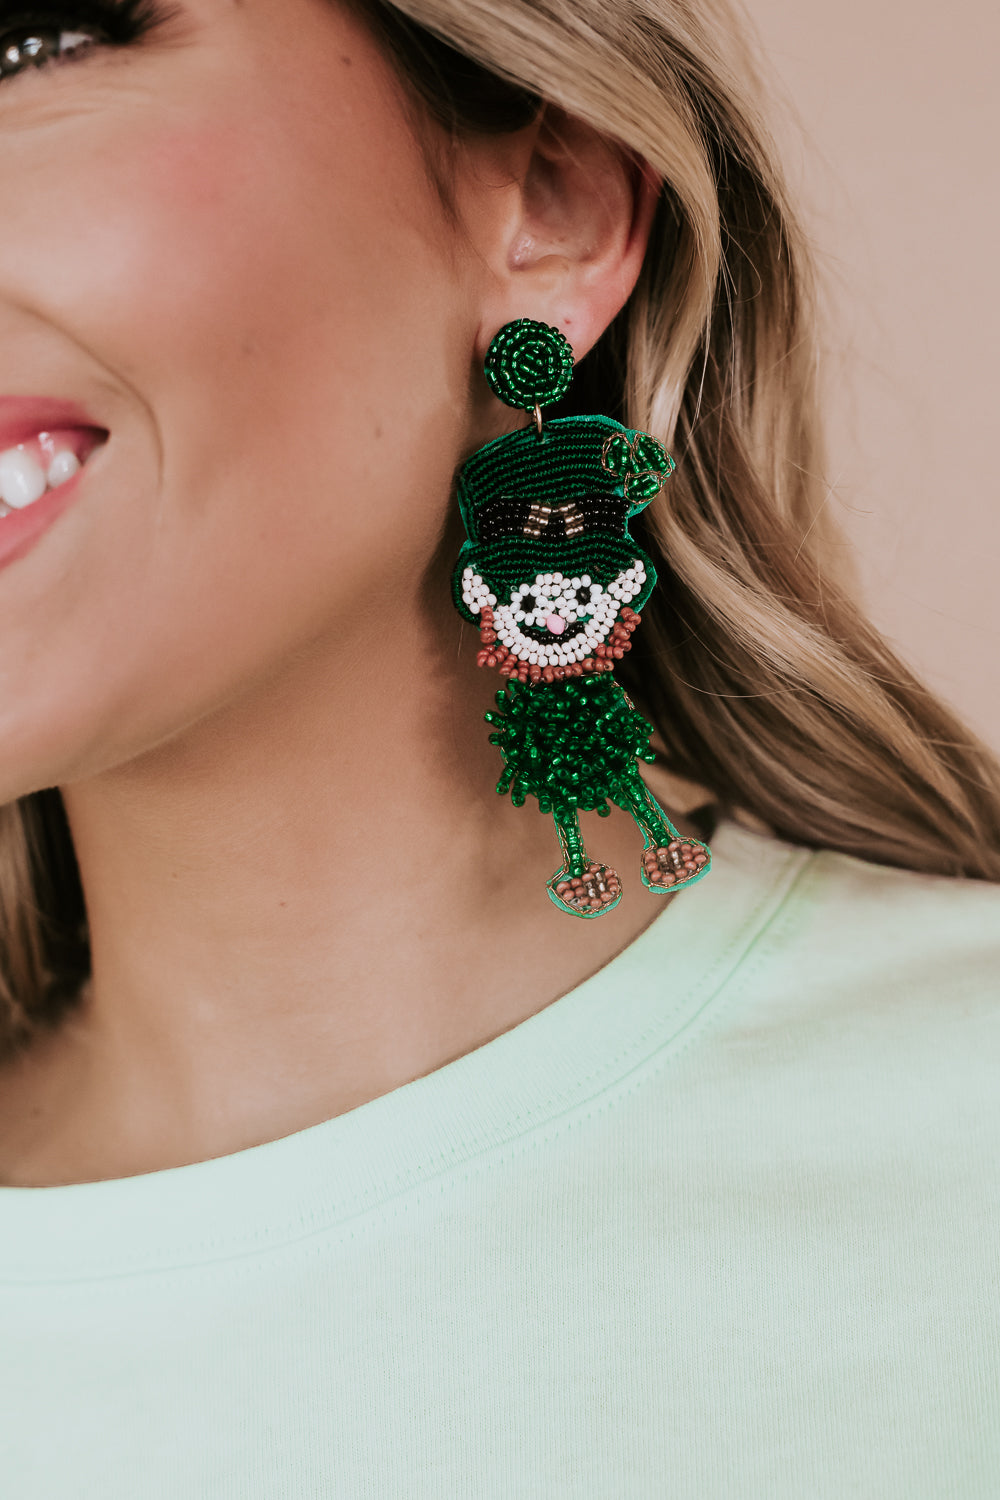 Leprechaun earrings, Leprechaun beaded earrings, St. Pattys day earrings